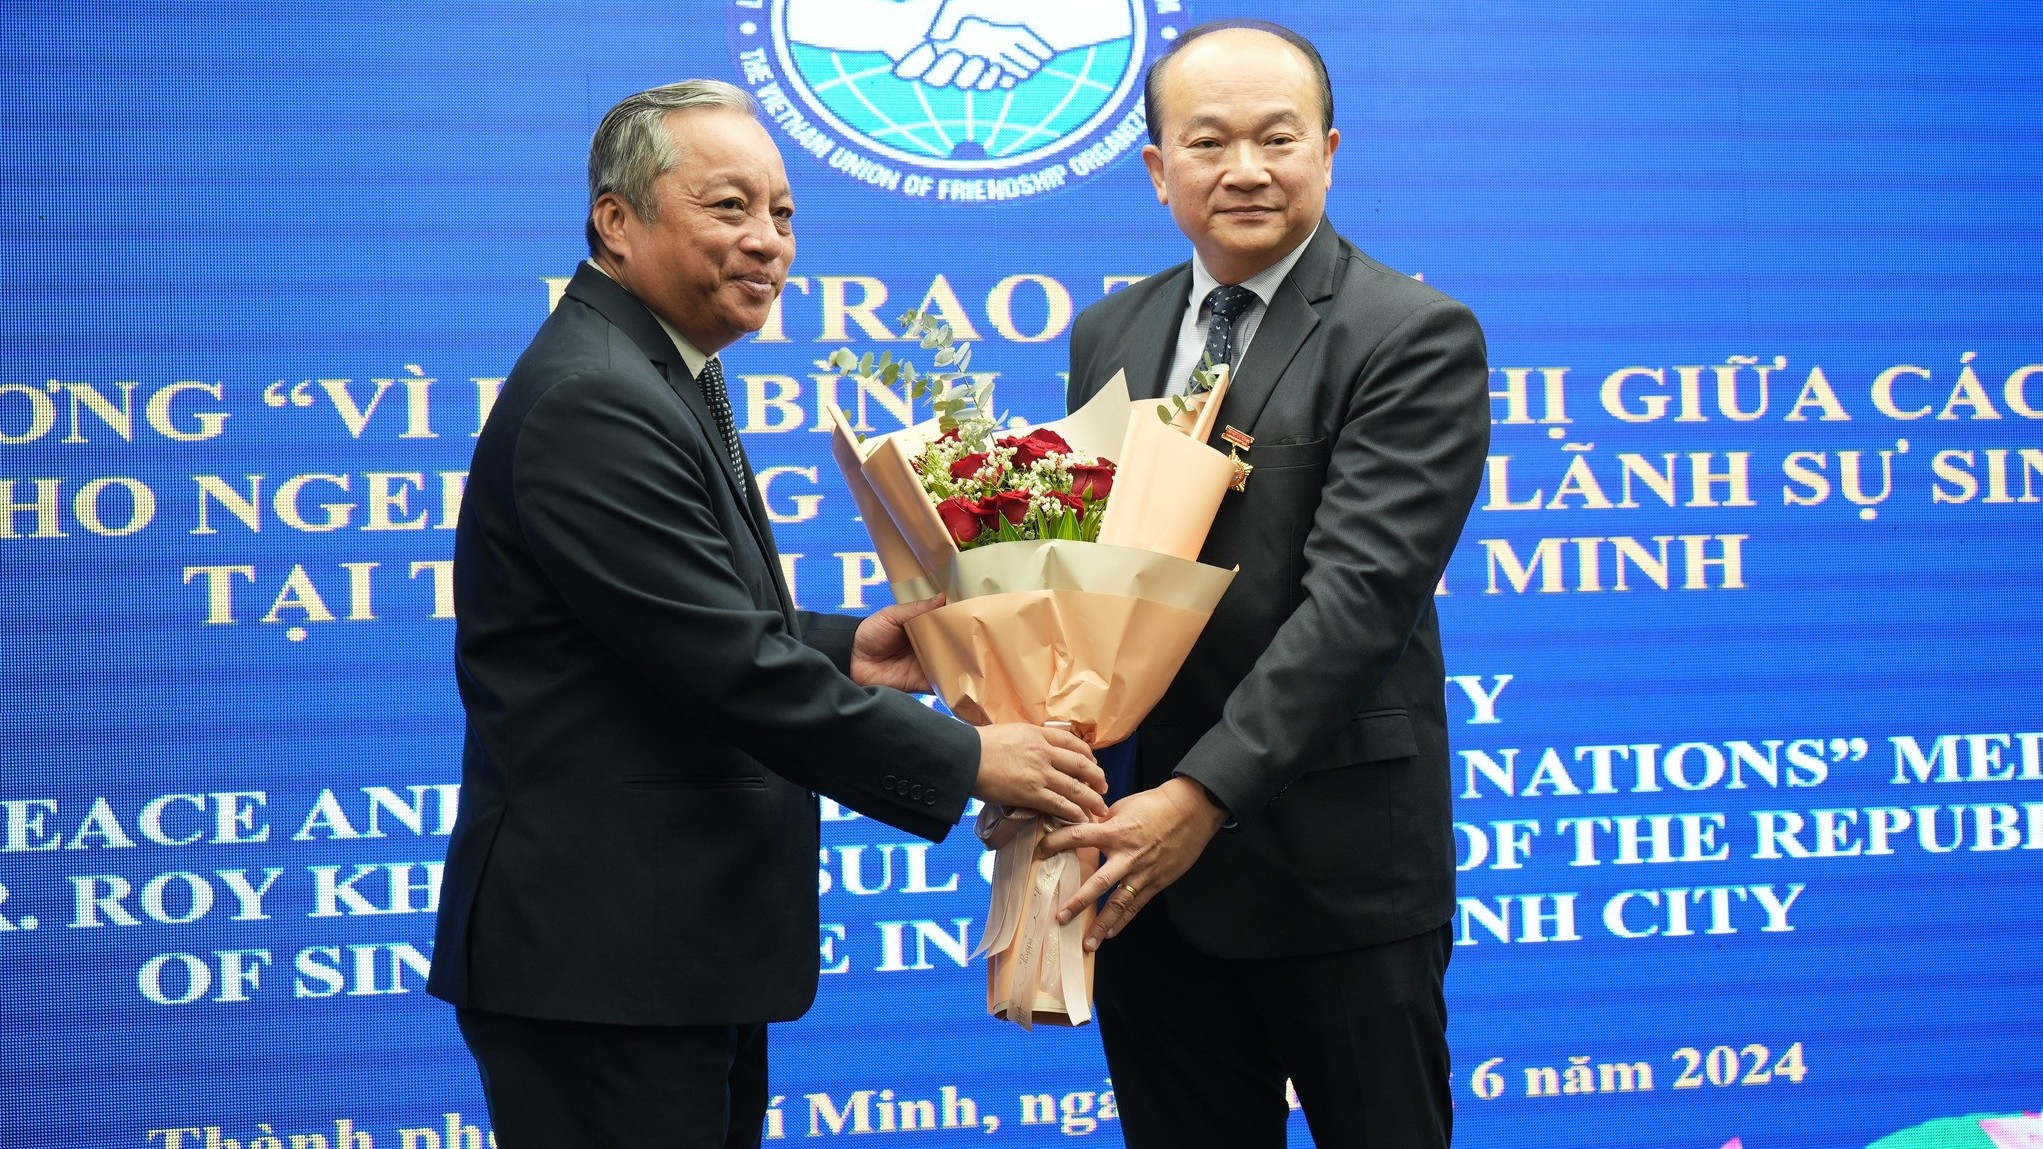 Tổng lãnh sự Singapore tại TP.HCM Kho Ngee Seng Roy: luôn nỗ lực đóng góp cho quan hệ nhân dân Việt Nam - Singapore